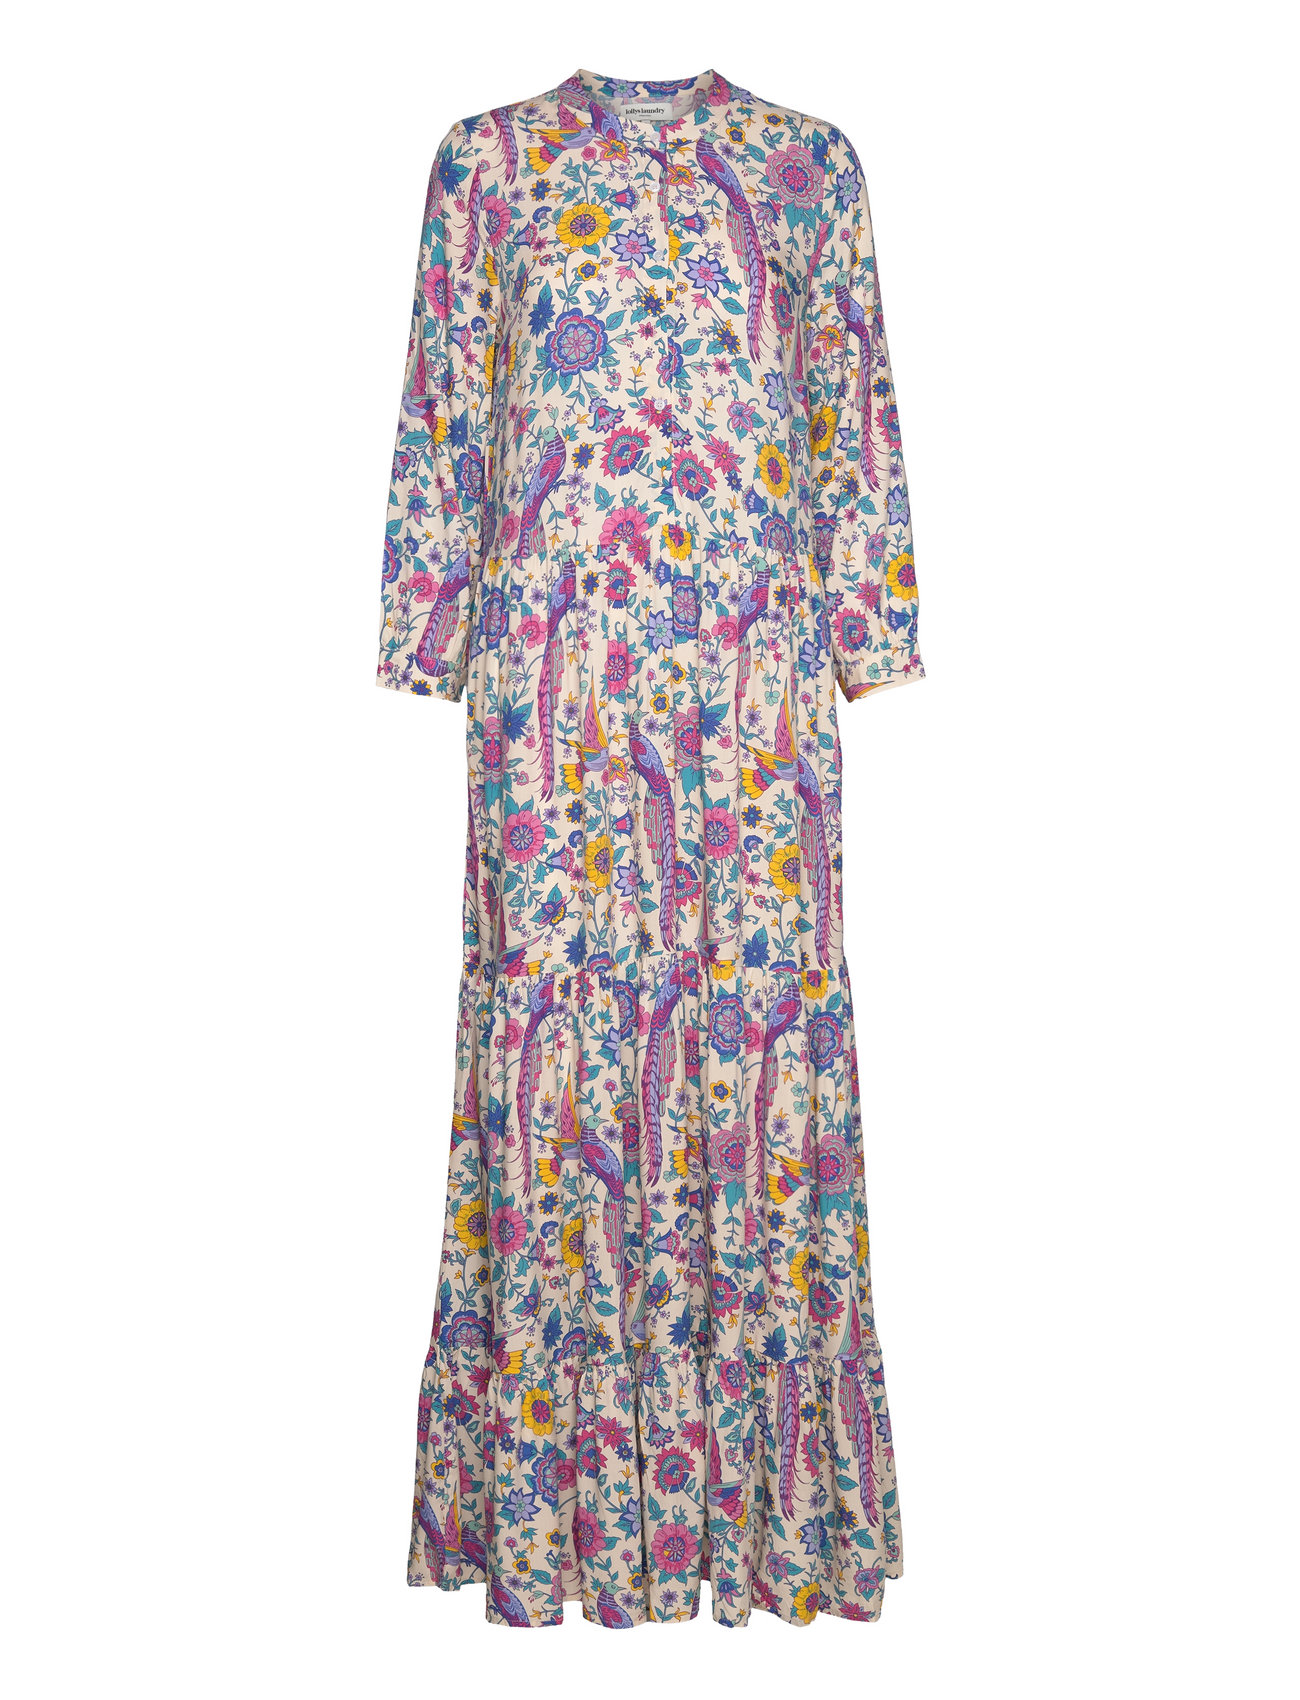 Nee Dress Maxiklänning Festklänning Multi/patterned Lollys Laundry